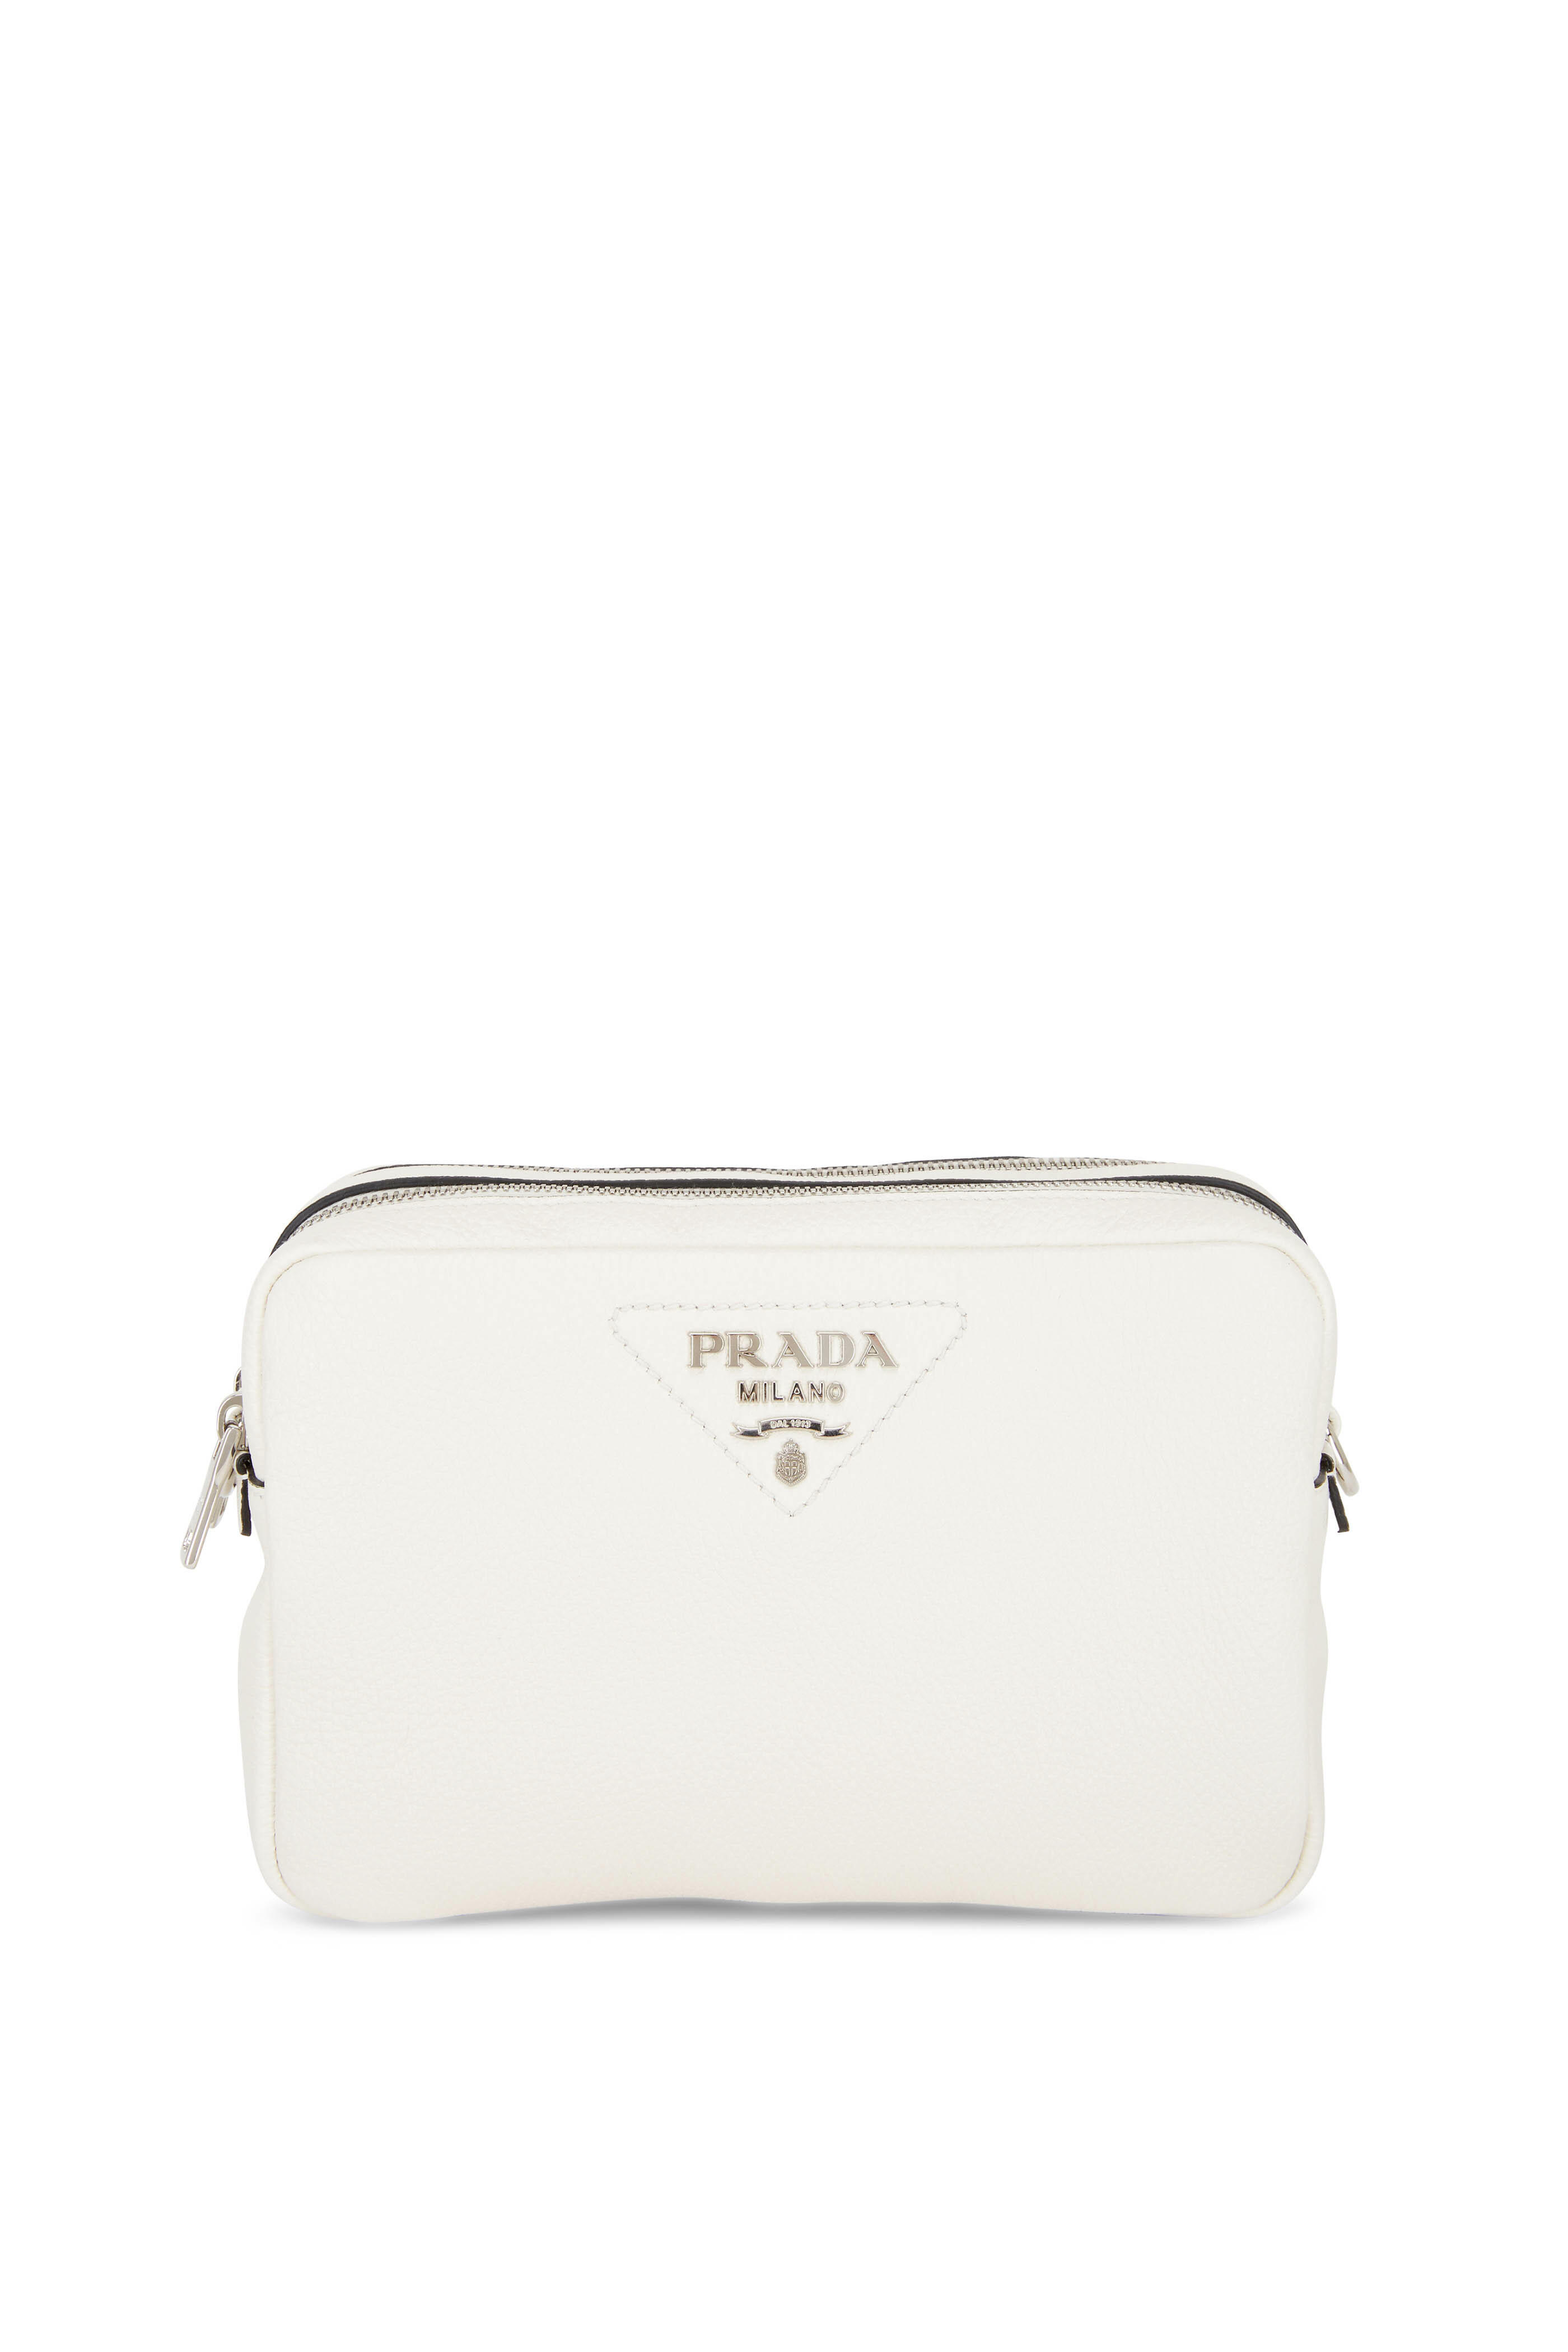 Prada, Bags, Brand New Prada Double Zip Camera Bag